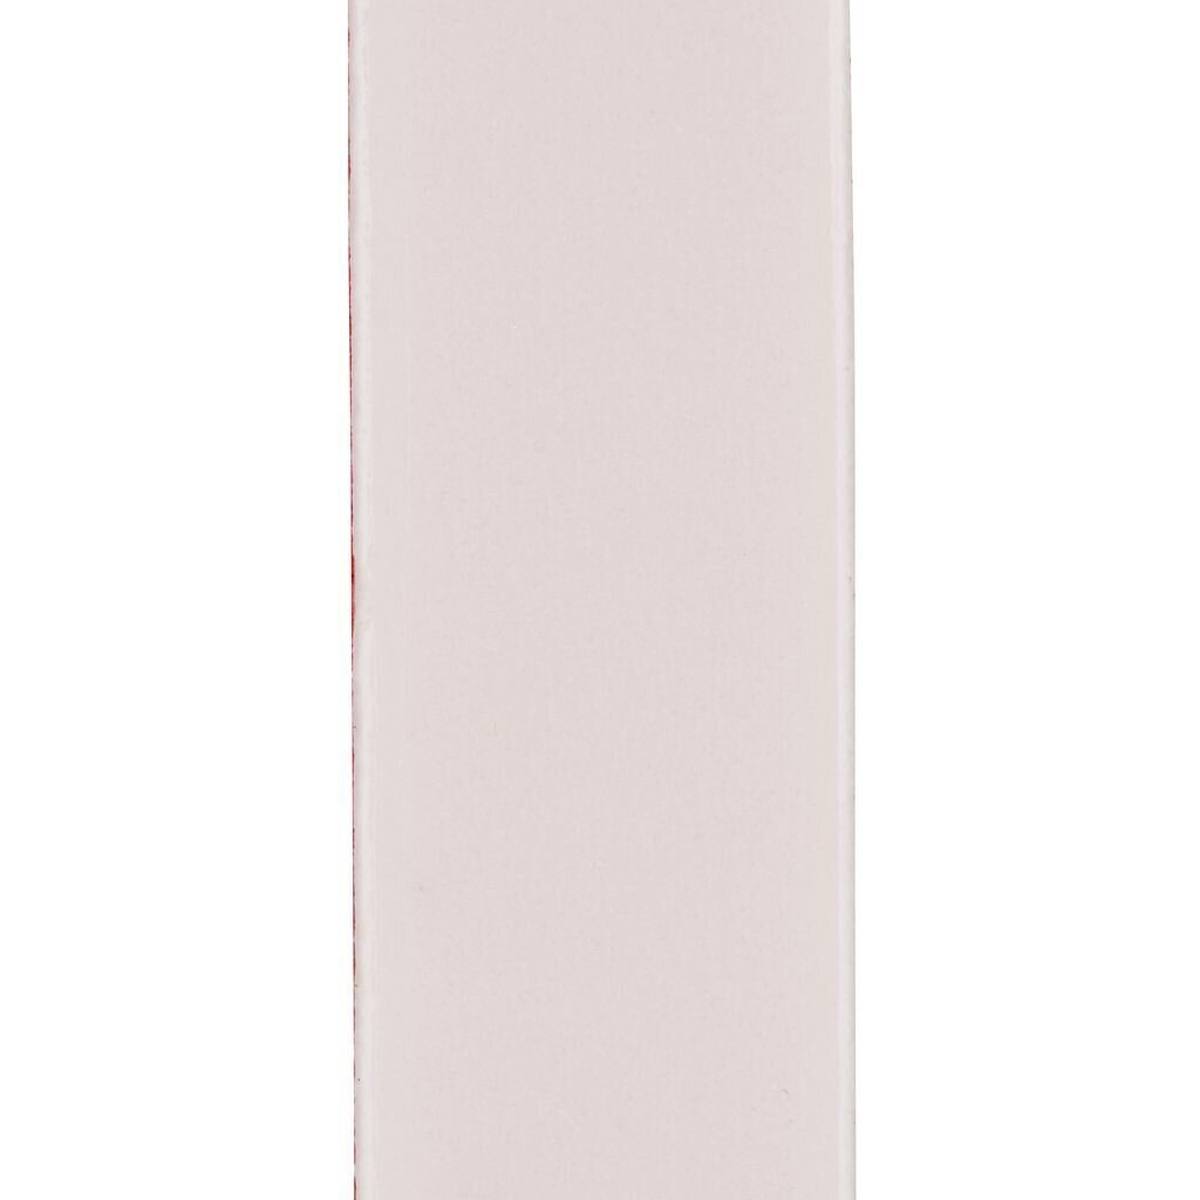 3M VHB ruban adhésif LSE-160WF, blanc, 12 mm x 33 m, 1,6 mm